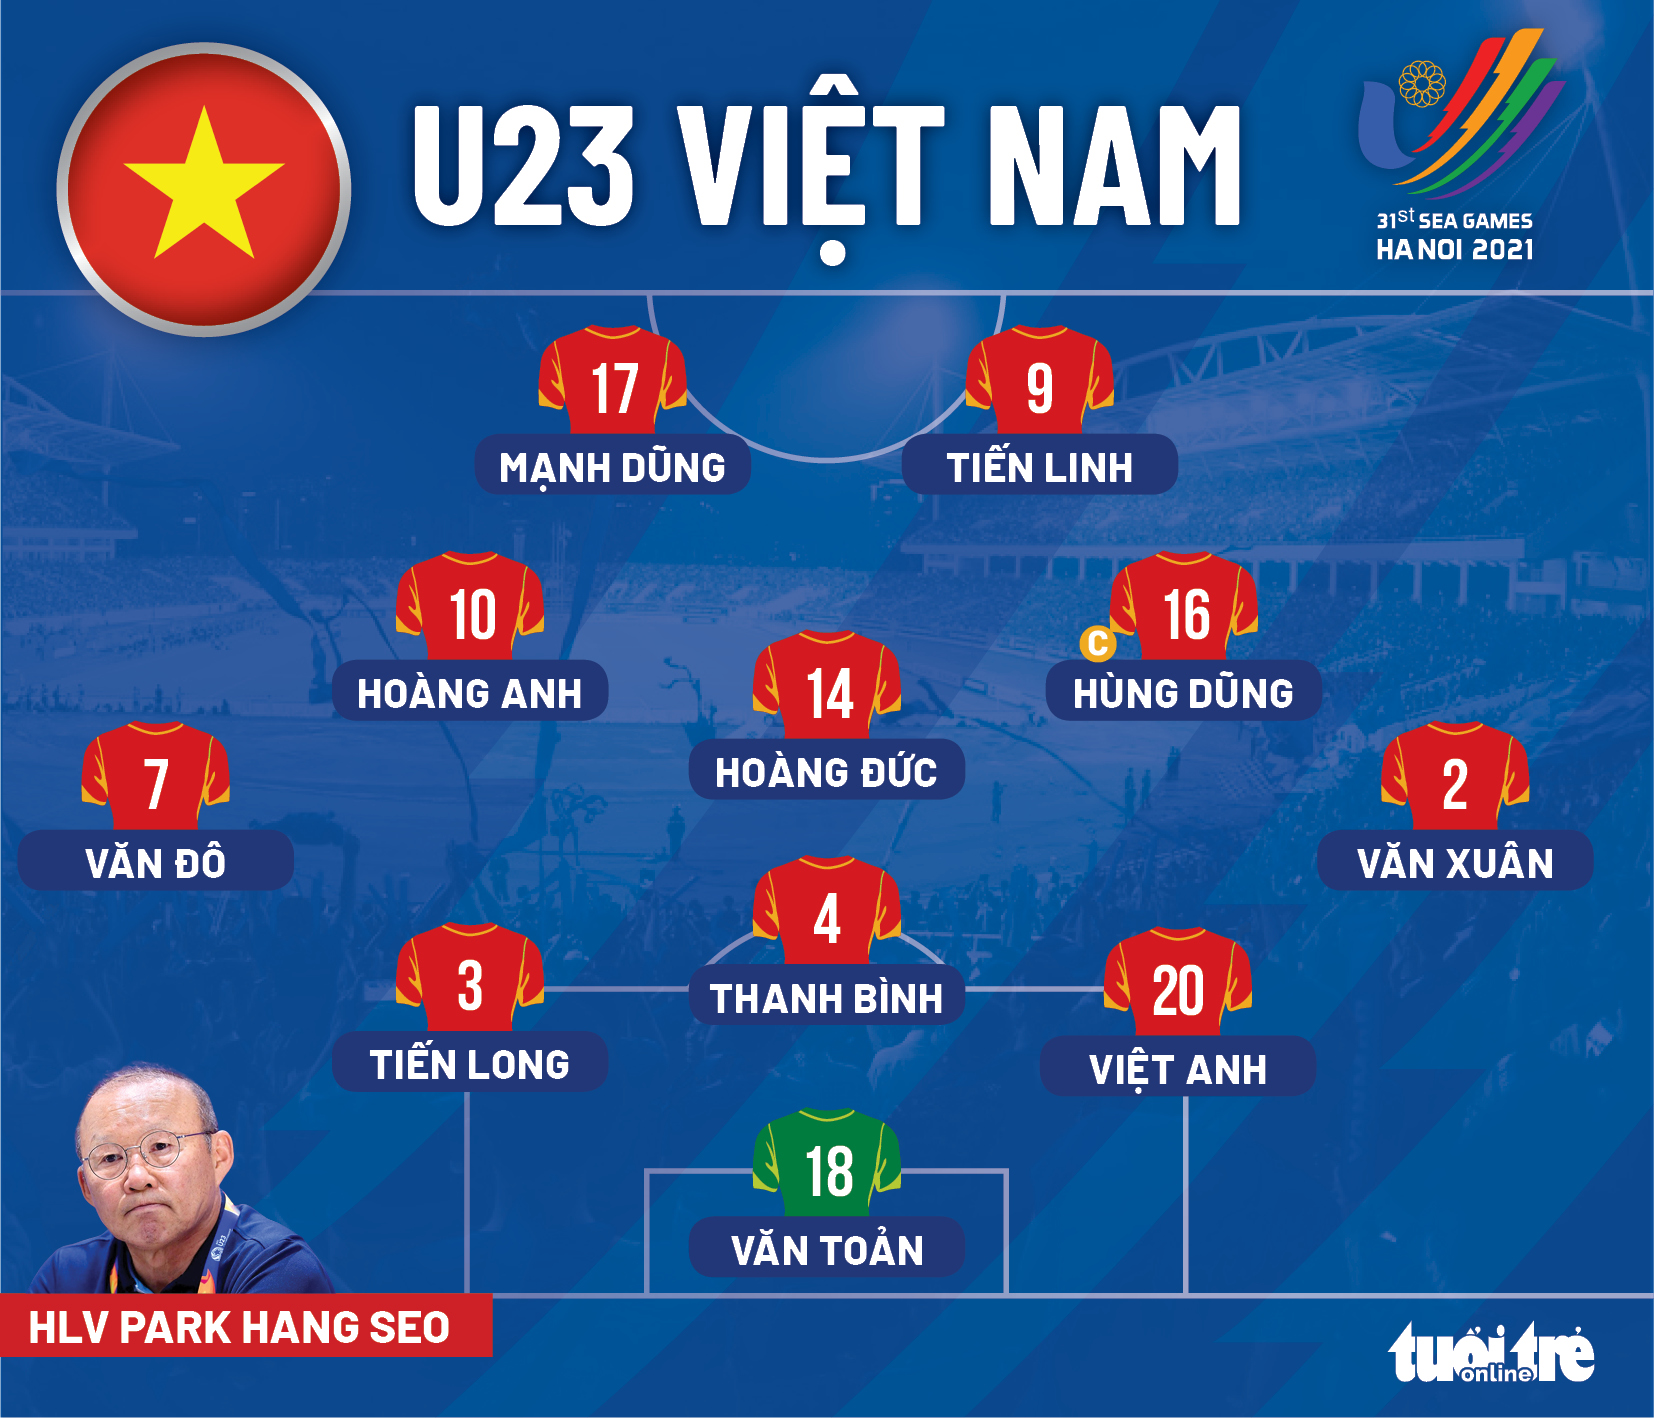 Đội hình xuất phát U23 Việt Nam: Ba cầu thủ quá tuổi đá chính, Văn Xuân - Văn Đô góp mặt - Ảnh 1.